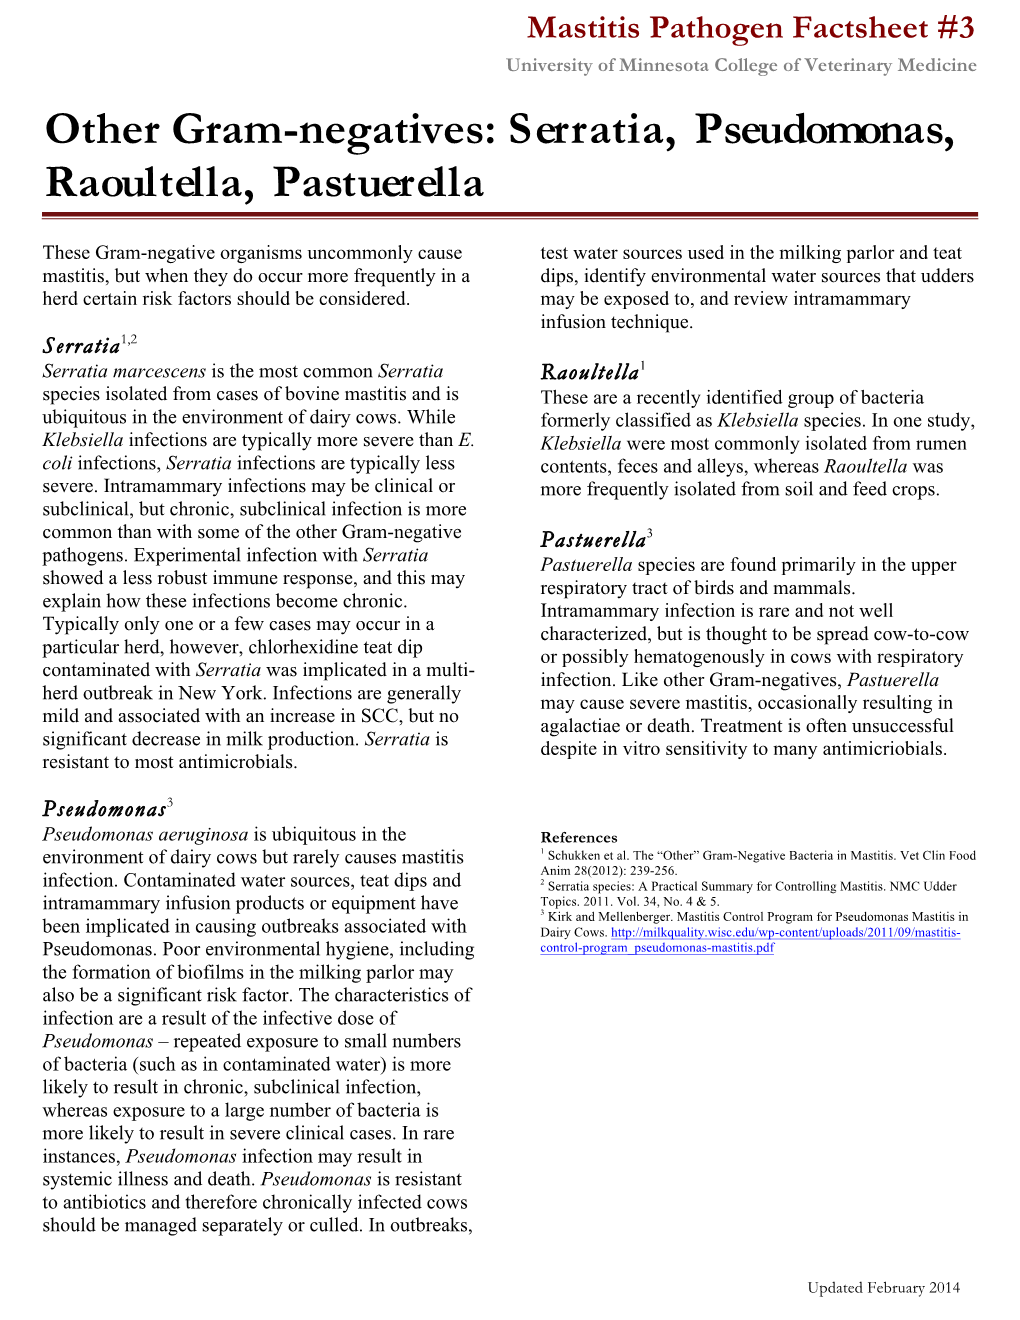 Other Gram-Negatives: Serratia, Pseudomonas, Raoultella, Pastuerella